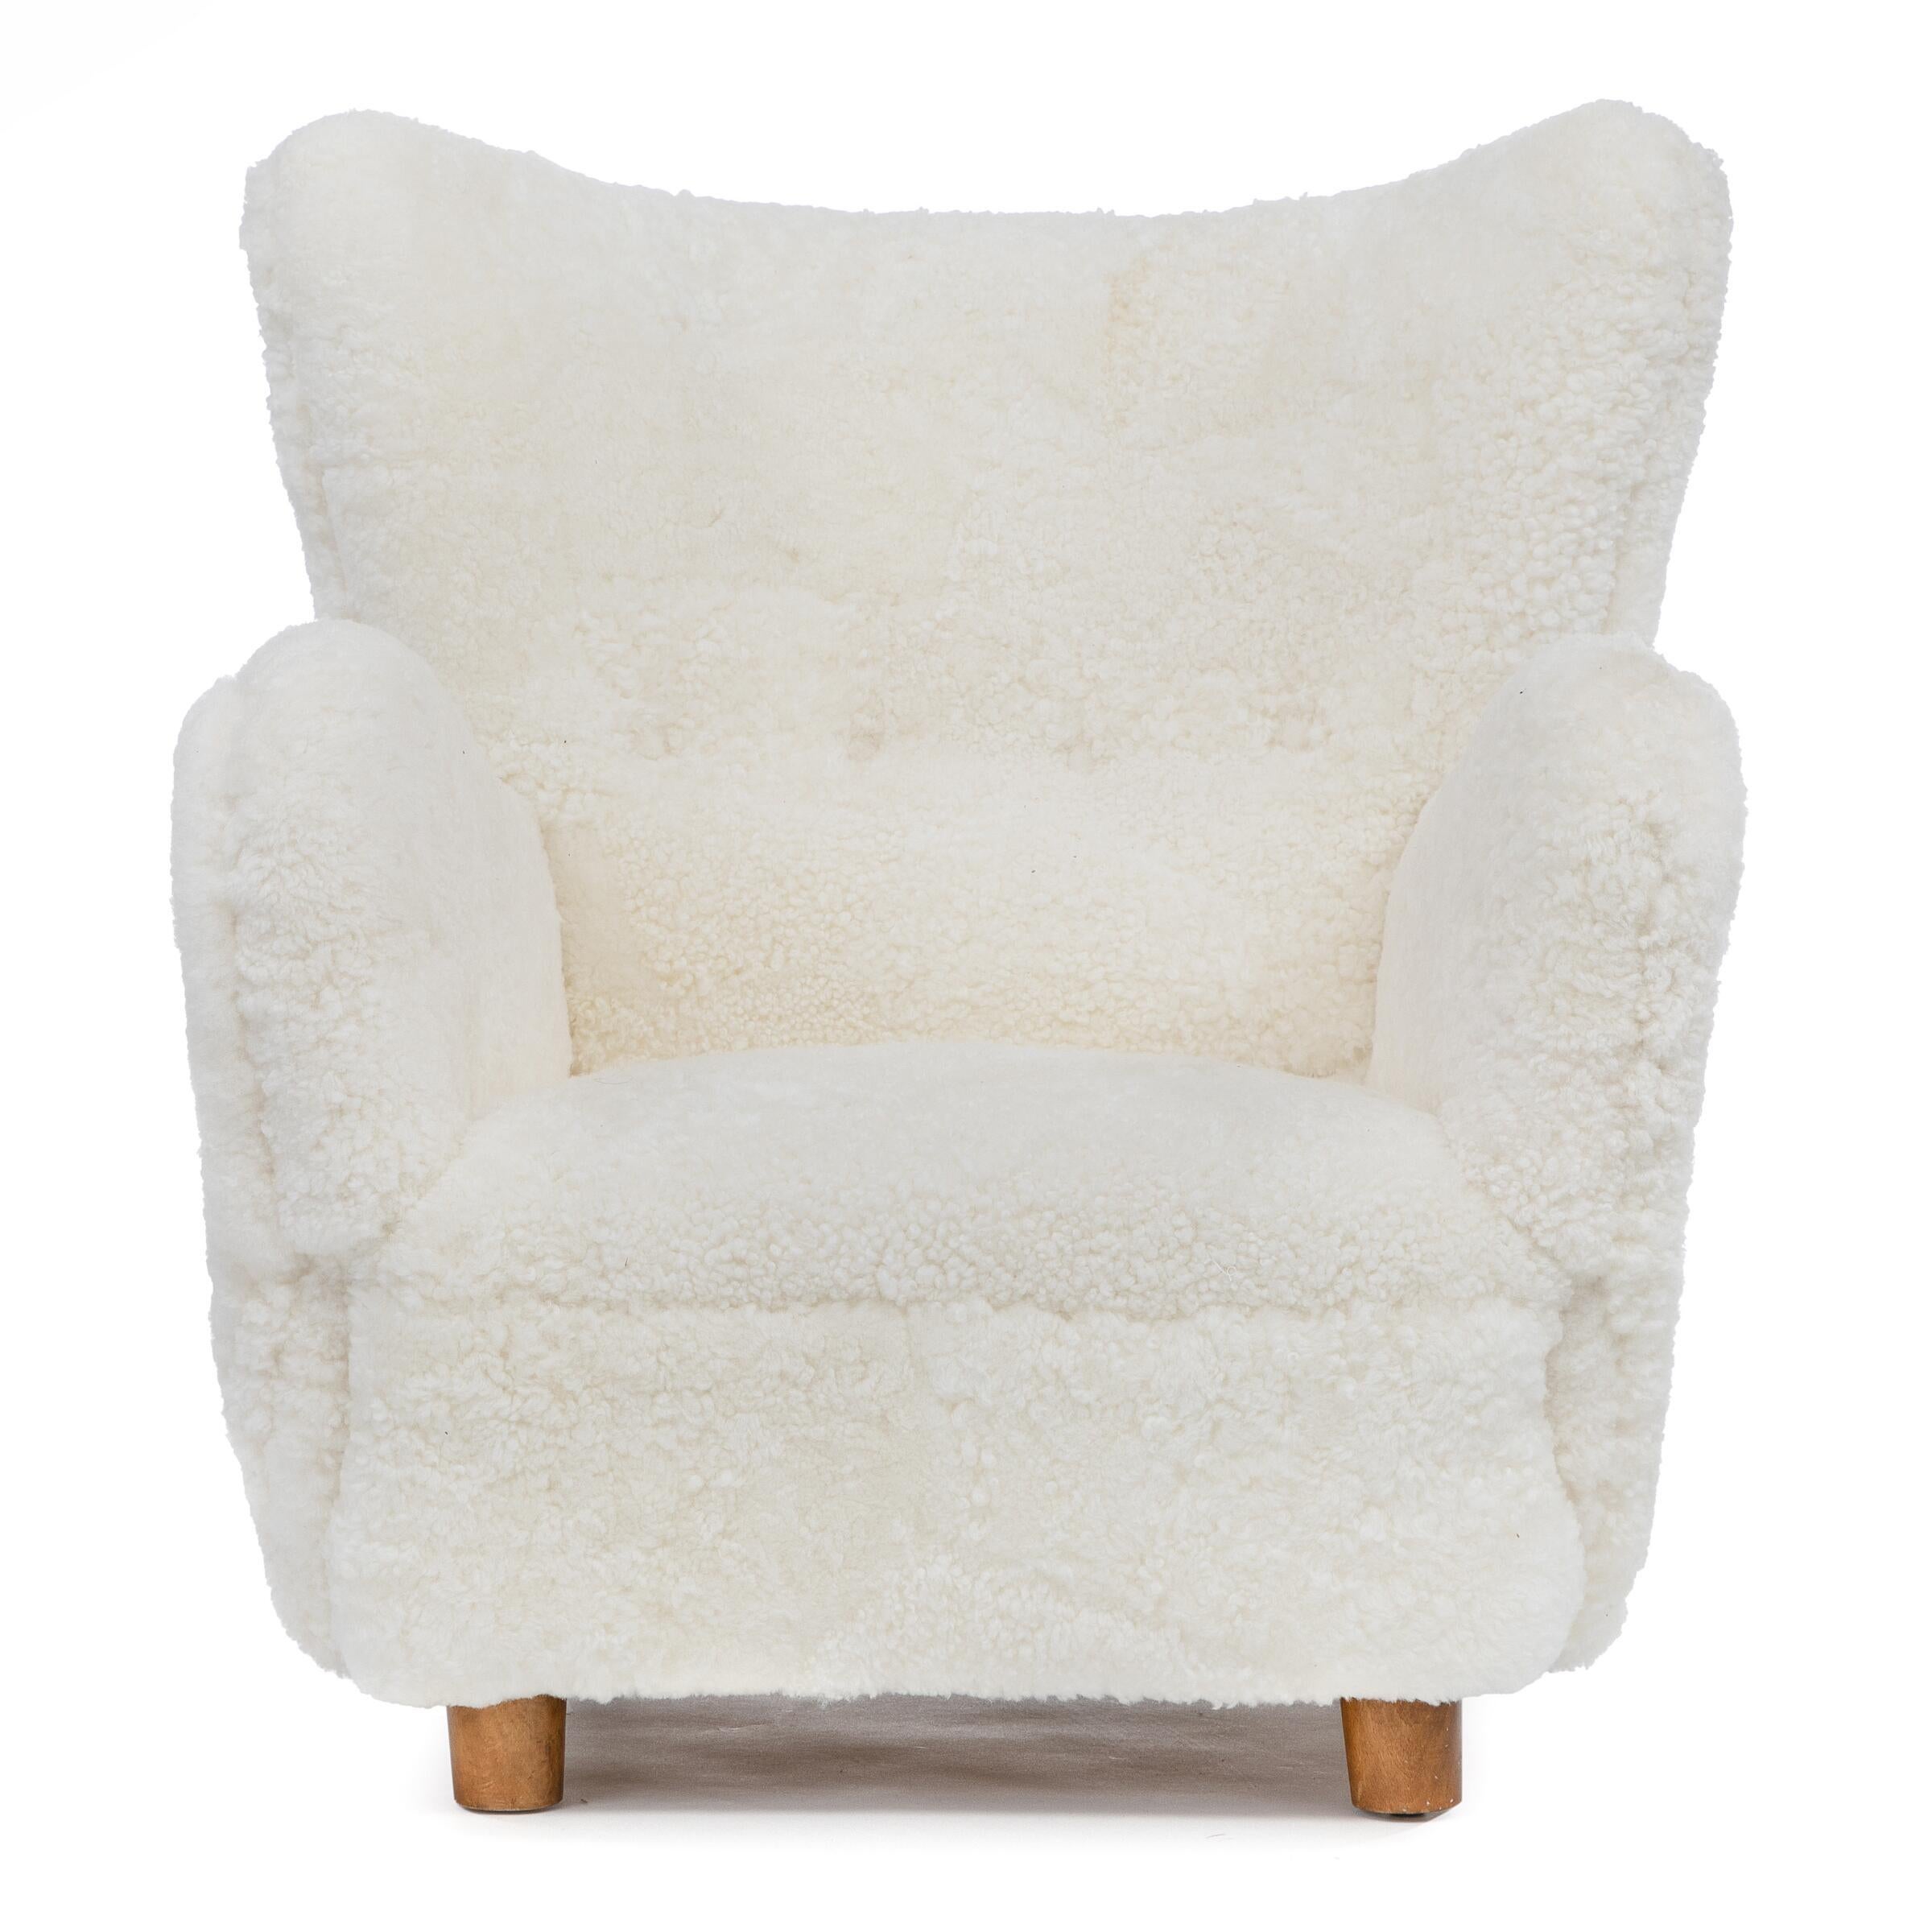 Dänischer Tischler: Schöner Sessel mit Beinen aus gebeizter Buche. Seiten, Sitz und Rücken mit weißer Lammwolle gepolstert. Hergestellt in den 1940er Jahren
Fragen Sie uns nach dem Preis für die Lieferung und wir werden unser Bestes tun, um das